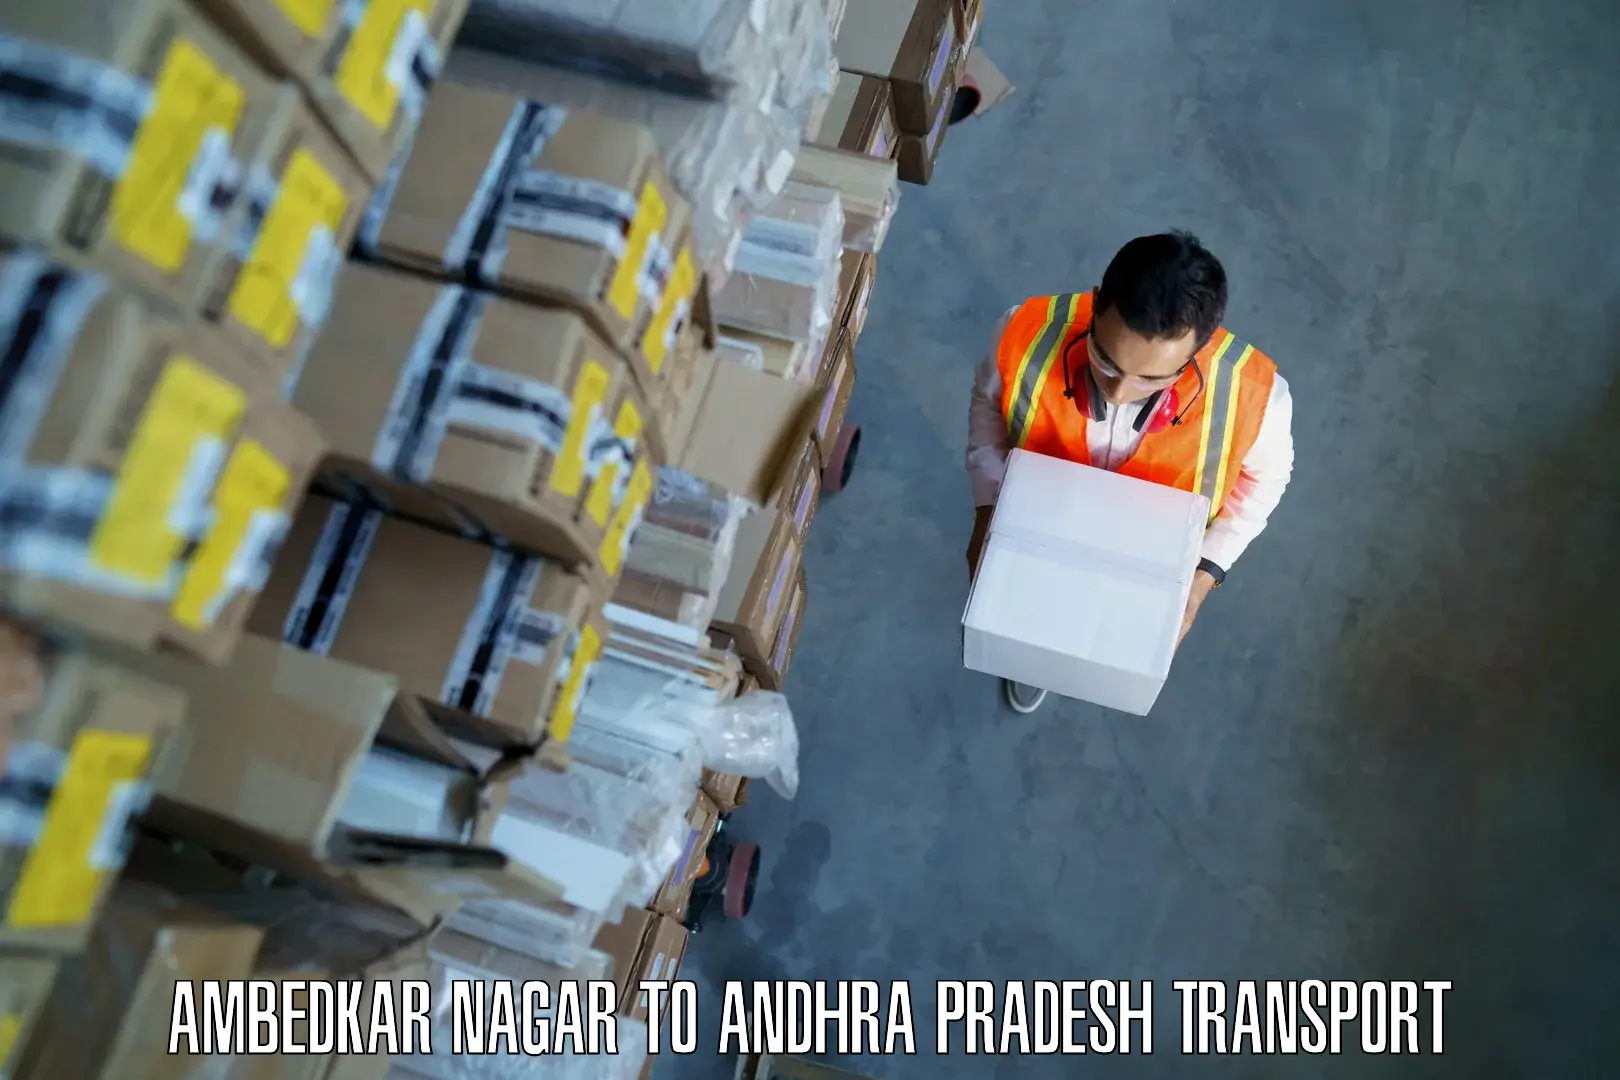 Commercial transport service Ambedkar Nagar to Sirvella